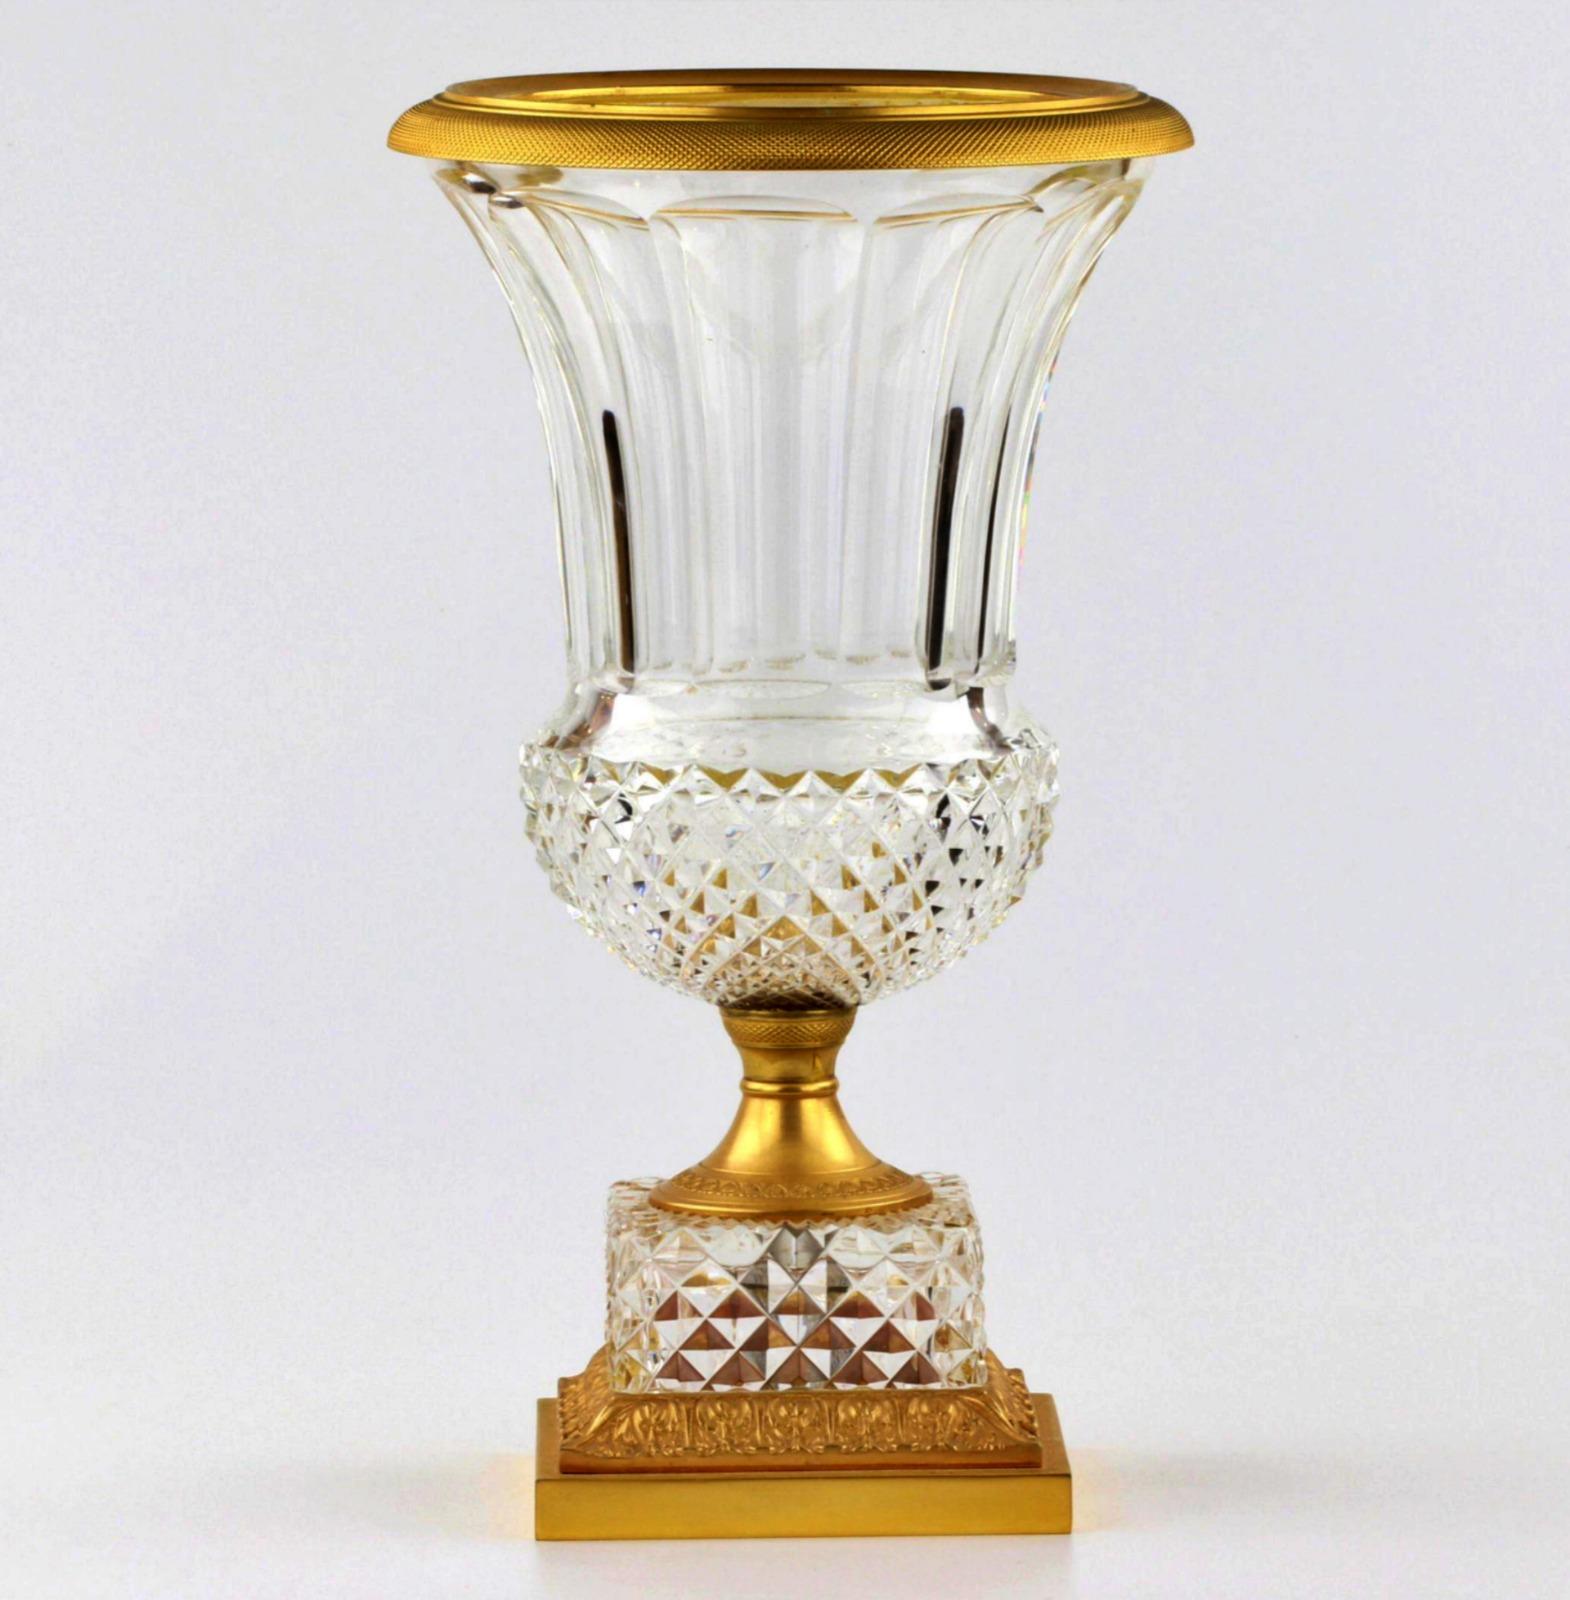 Vase en cristal Napoléon III - Empire - France 19ème siècle
avec bronze doré et padding de diamants sur les bases.
Des proportions et un design classiques.
H-35cm. Largeur : 20cm, Hauteur : 35cm, Profondeur : 20cm, Poids : 3kg, Condition : Bon,